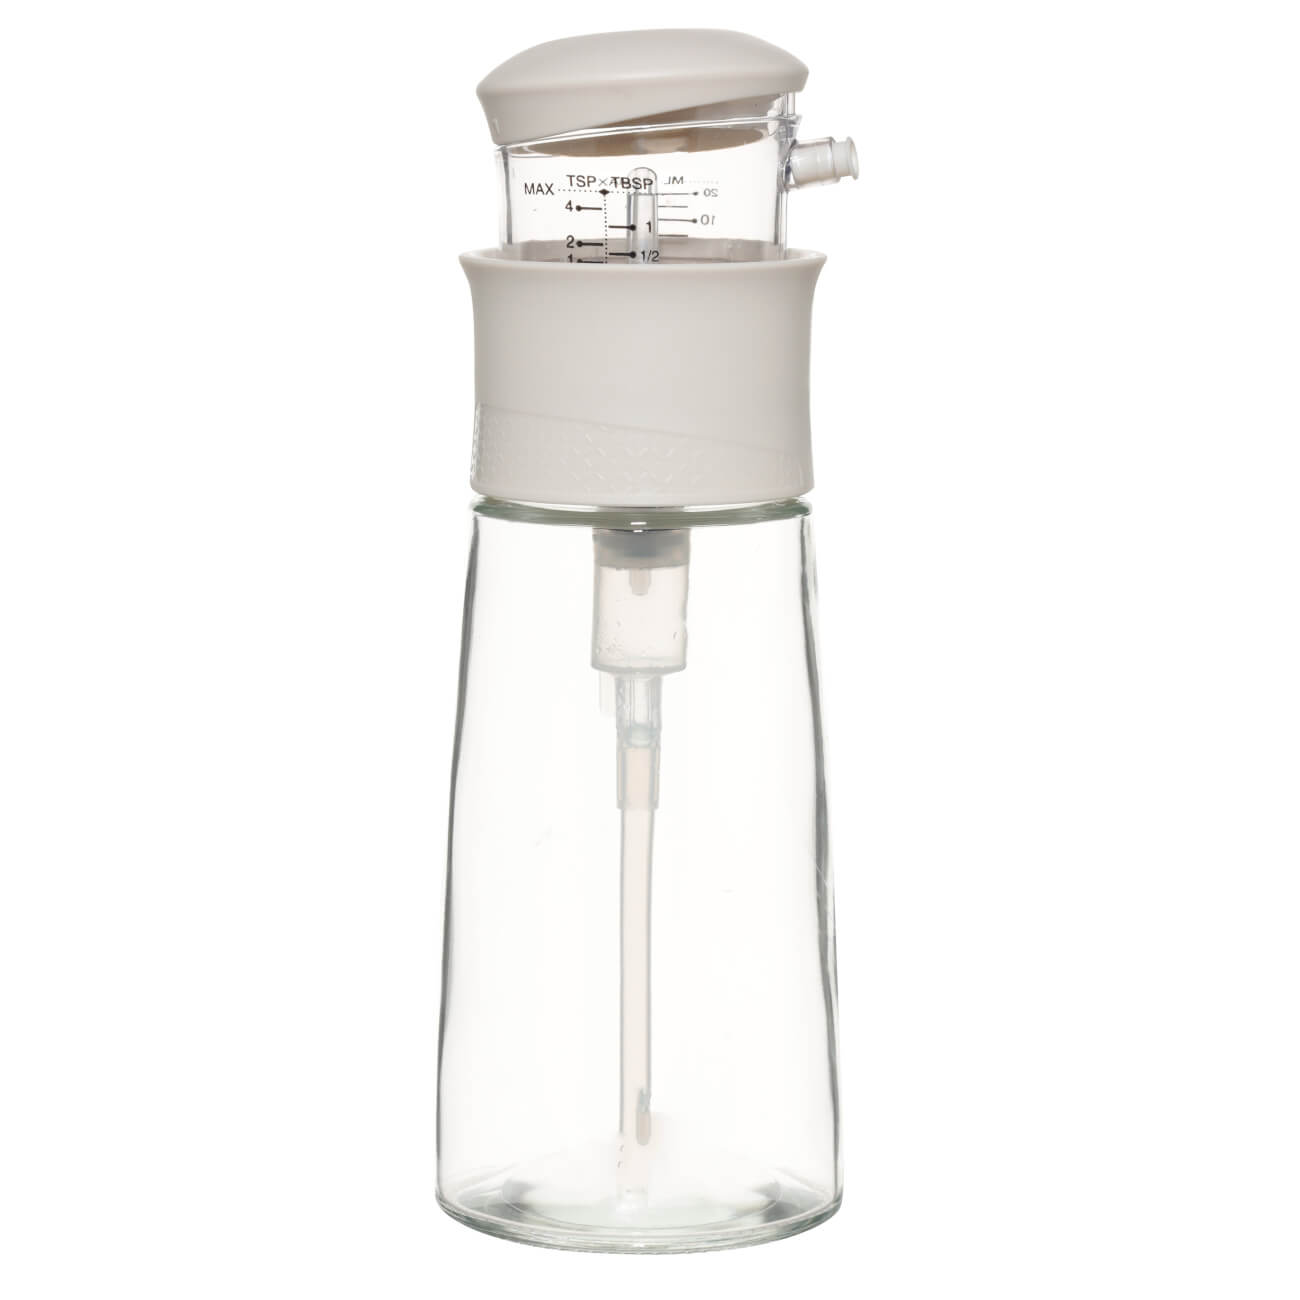 Бутылка для масла или уксуса, 320 мл, с мерным дозатором, стекло/пластик, бежевая, Assist